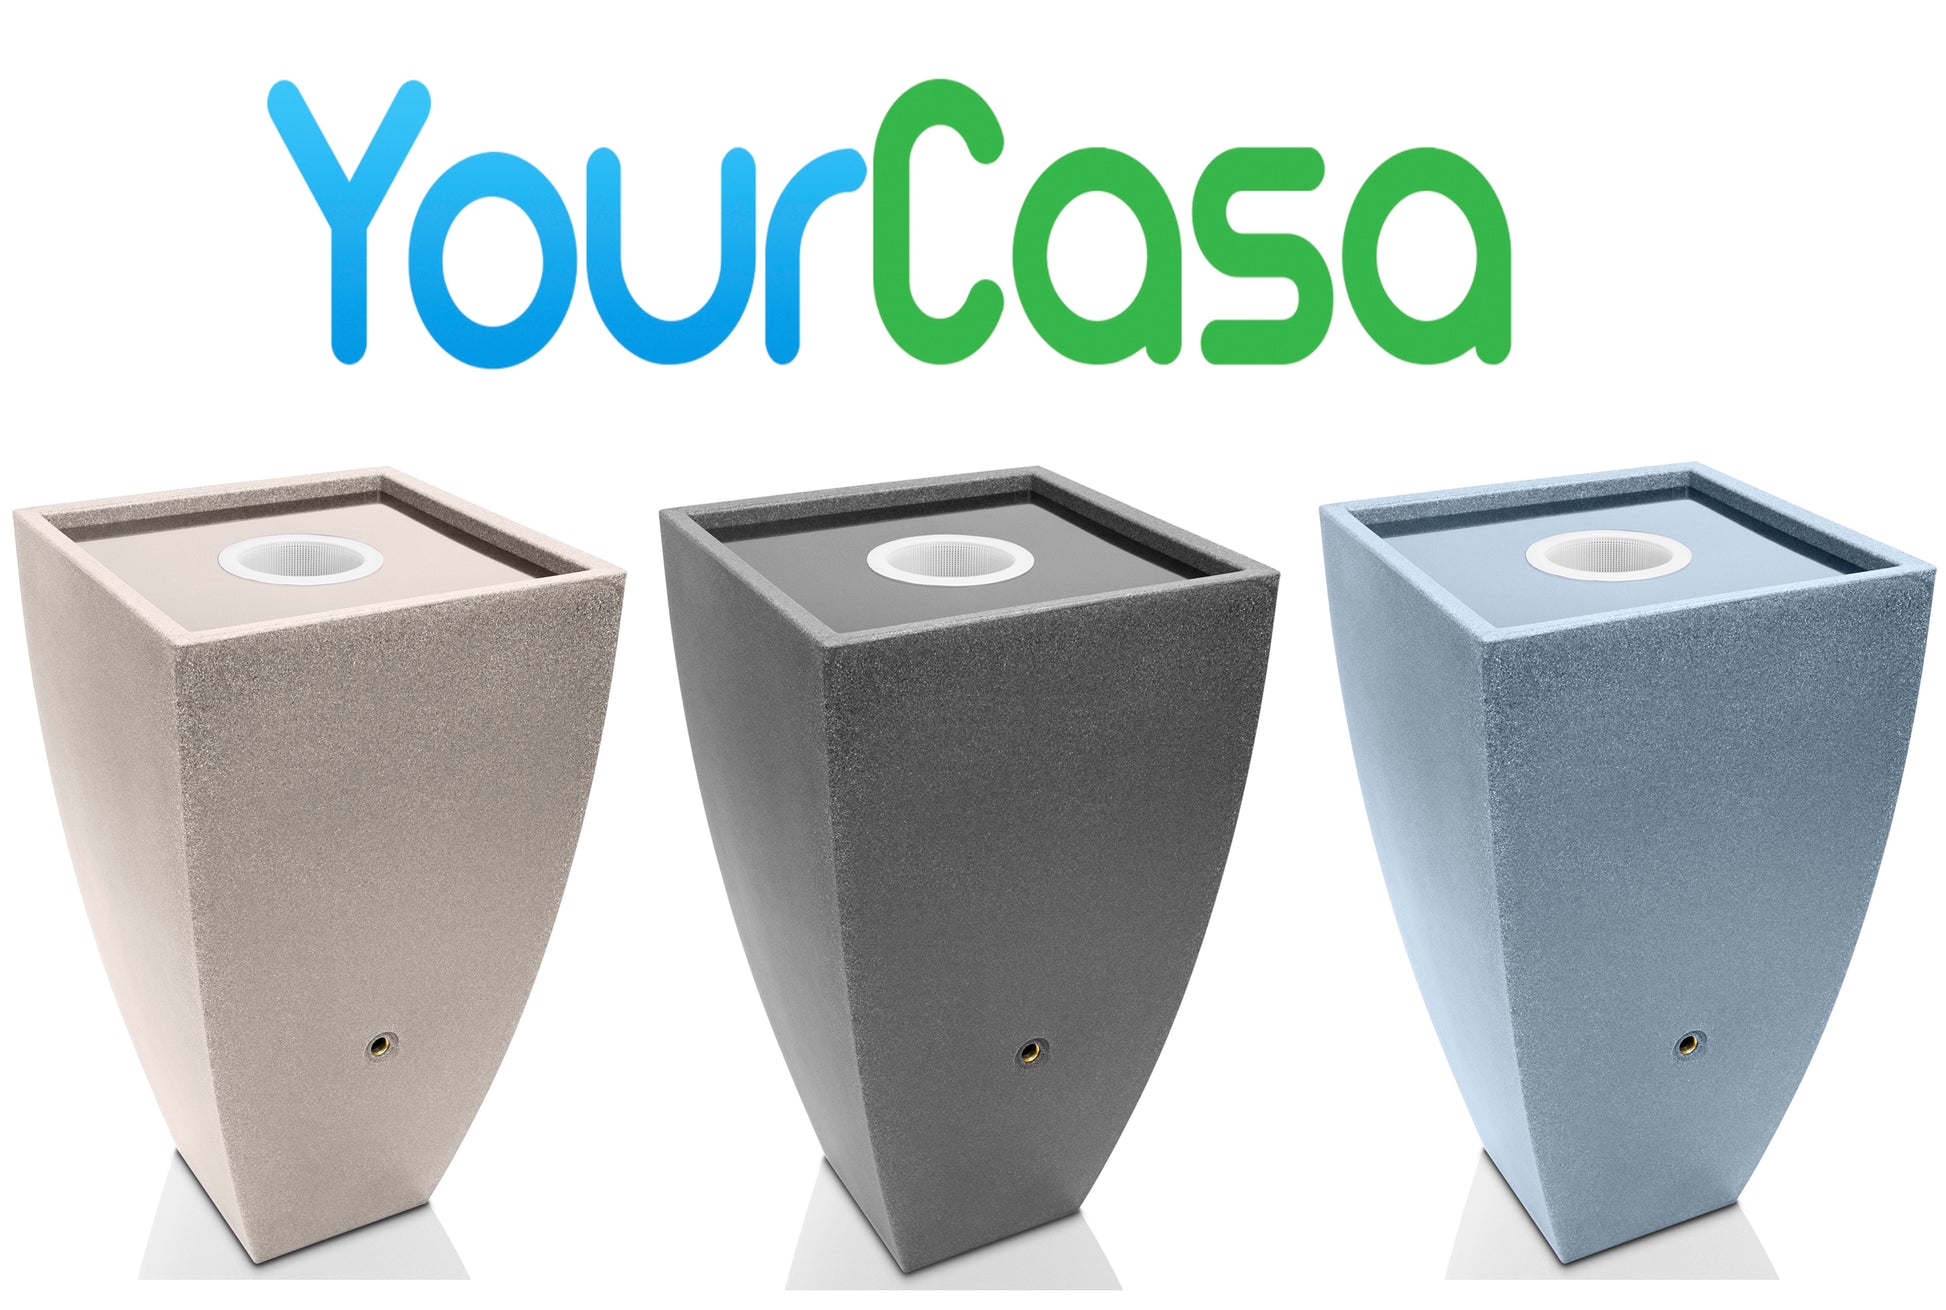 Drei moderne Pflanzgefäße in unterschiedlichen Farben mit dem Logo „yourcasa-de“ darüber, gestaltet für die nahtlose Funktion als YourCasa Regentonne.